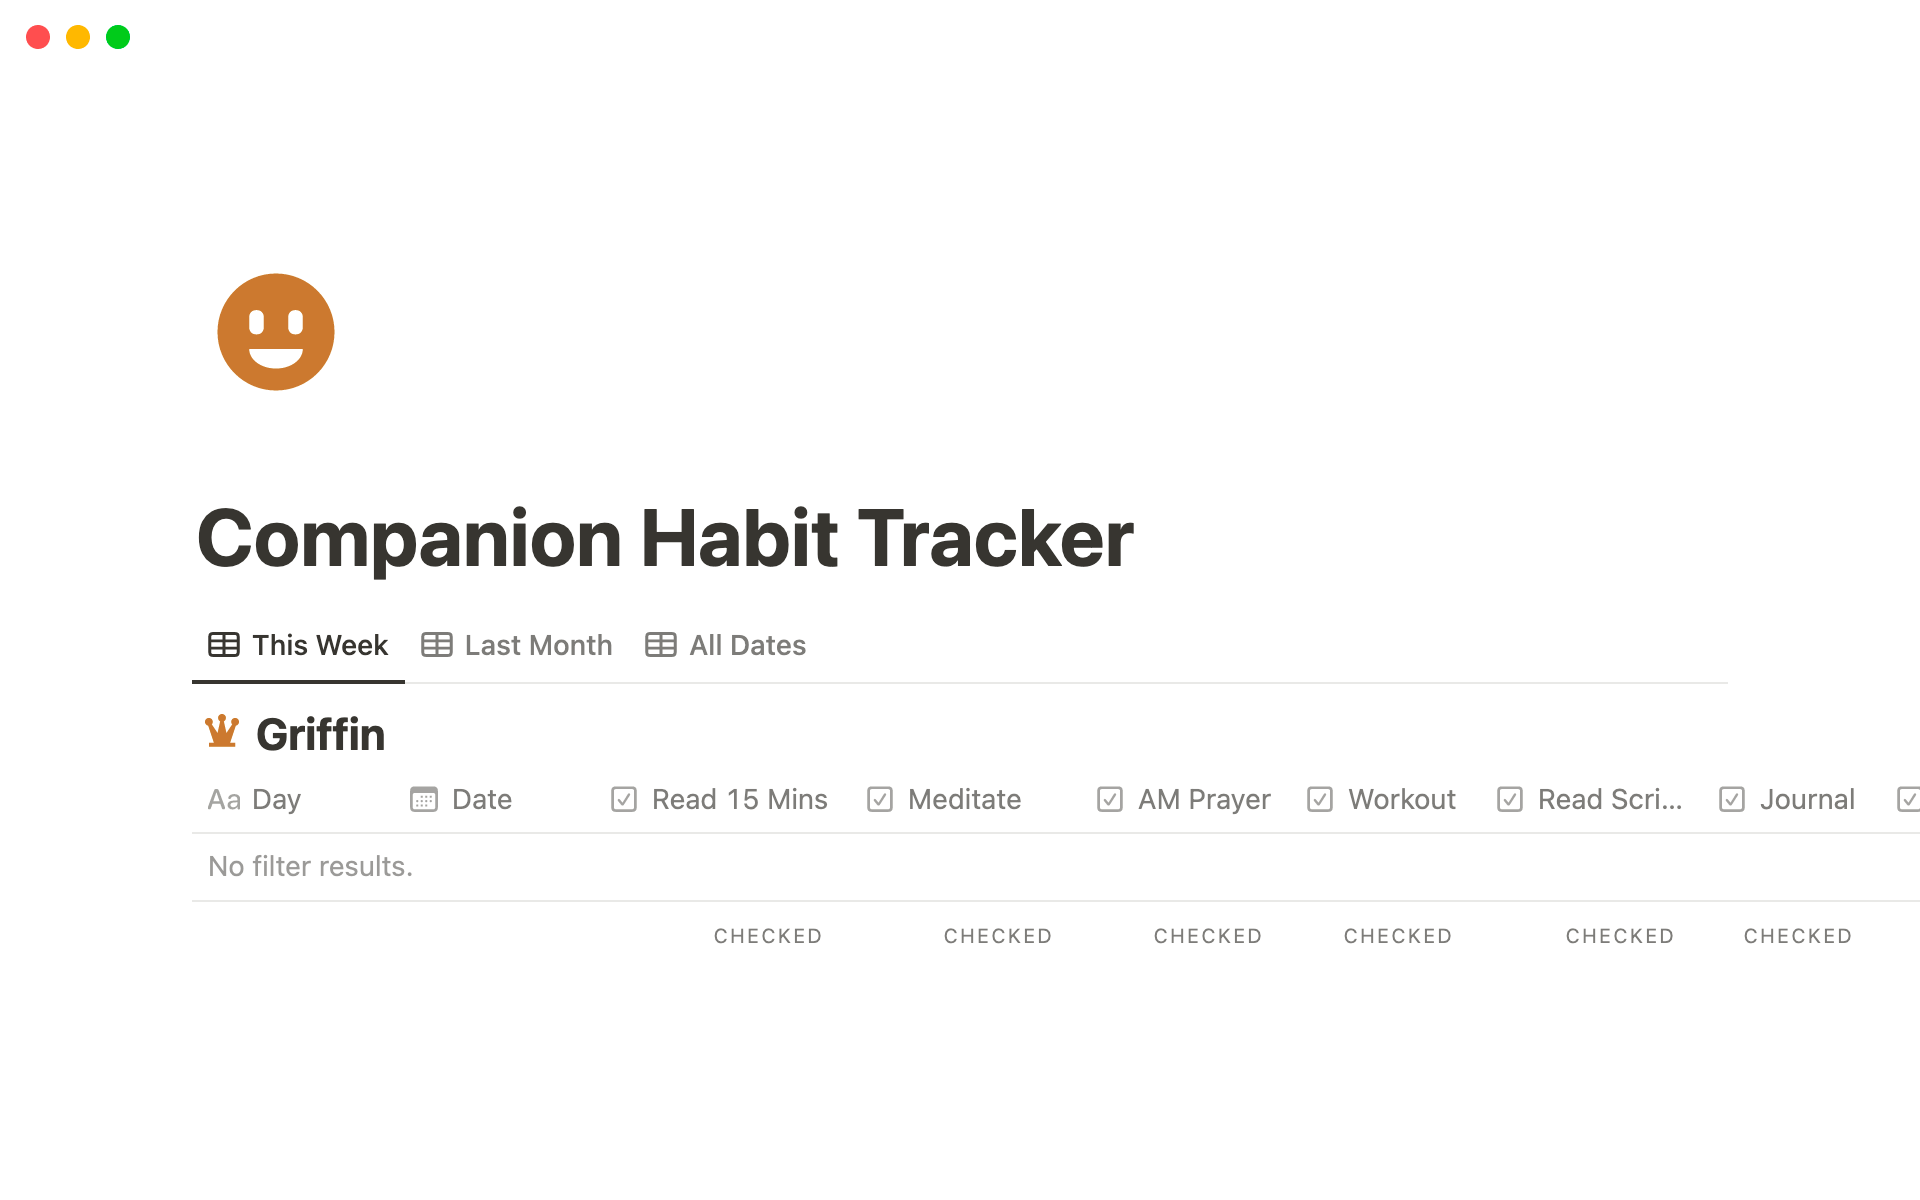 Vista previa de una plantilla para Companion Habit Tracker